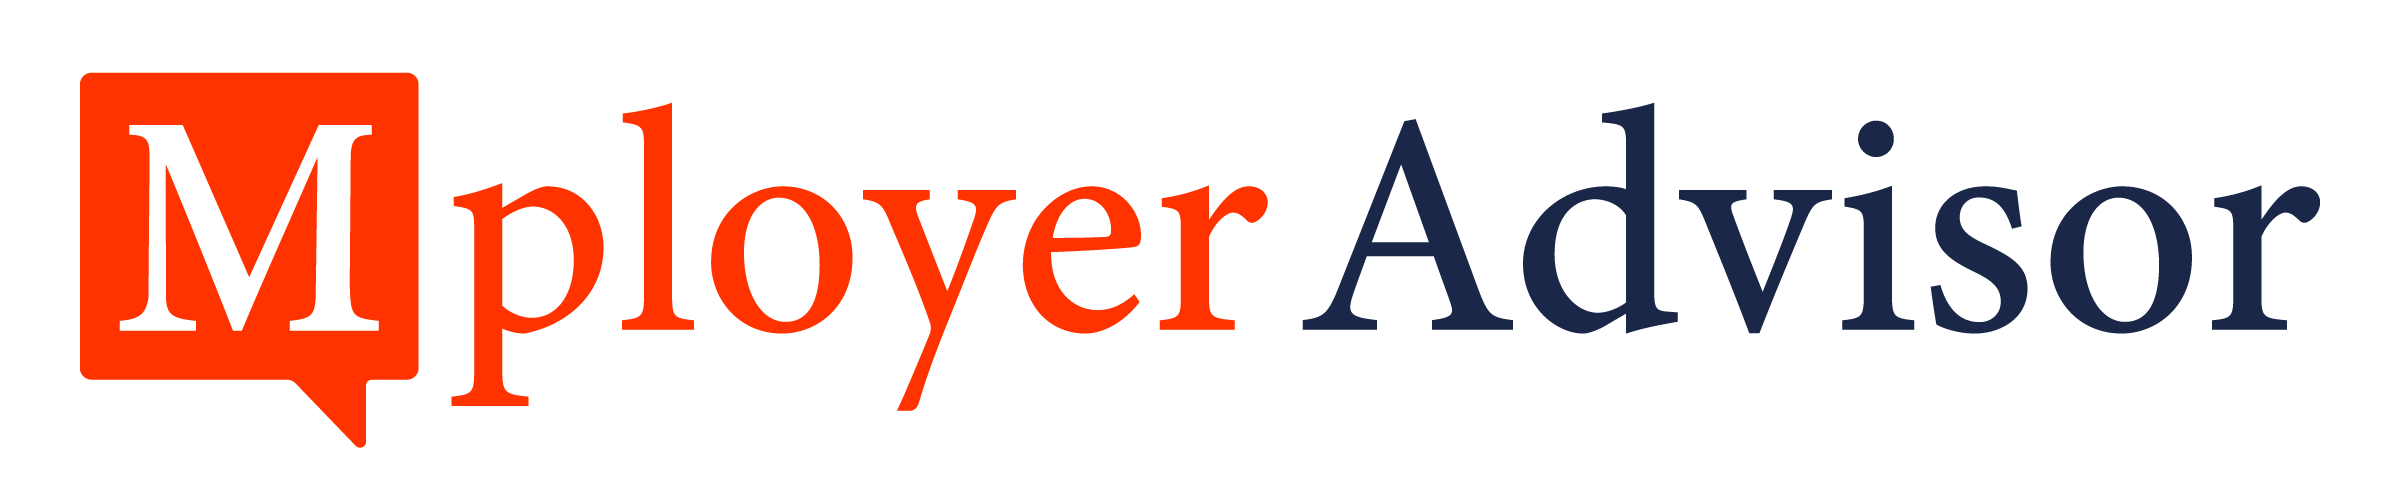 MployerAdvisor-logo-horizontal-redandnavy